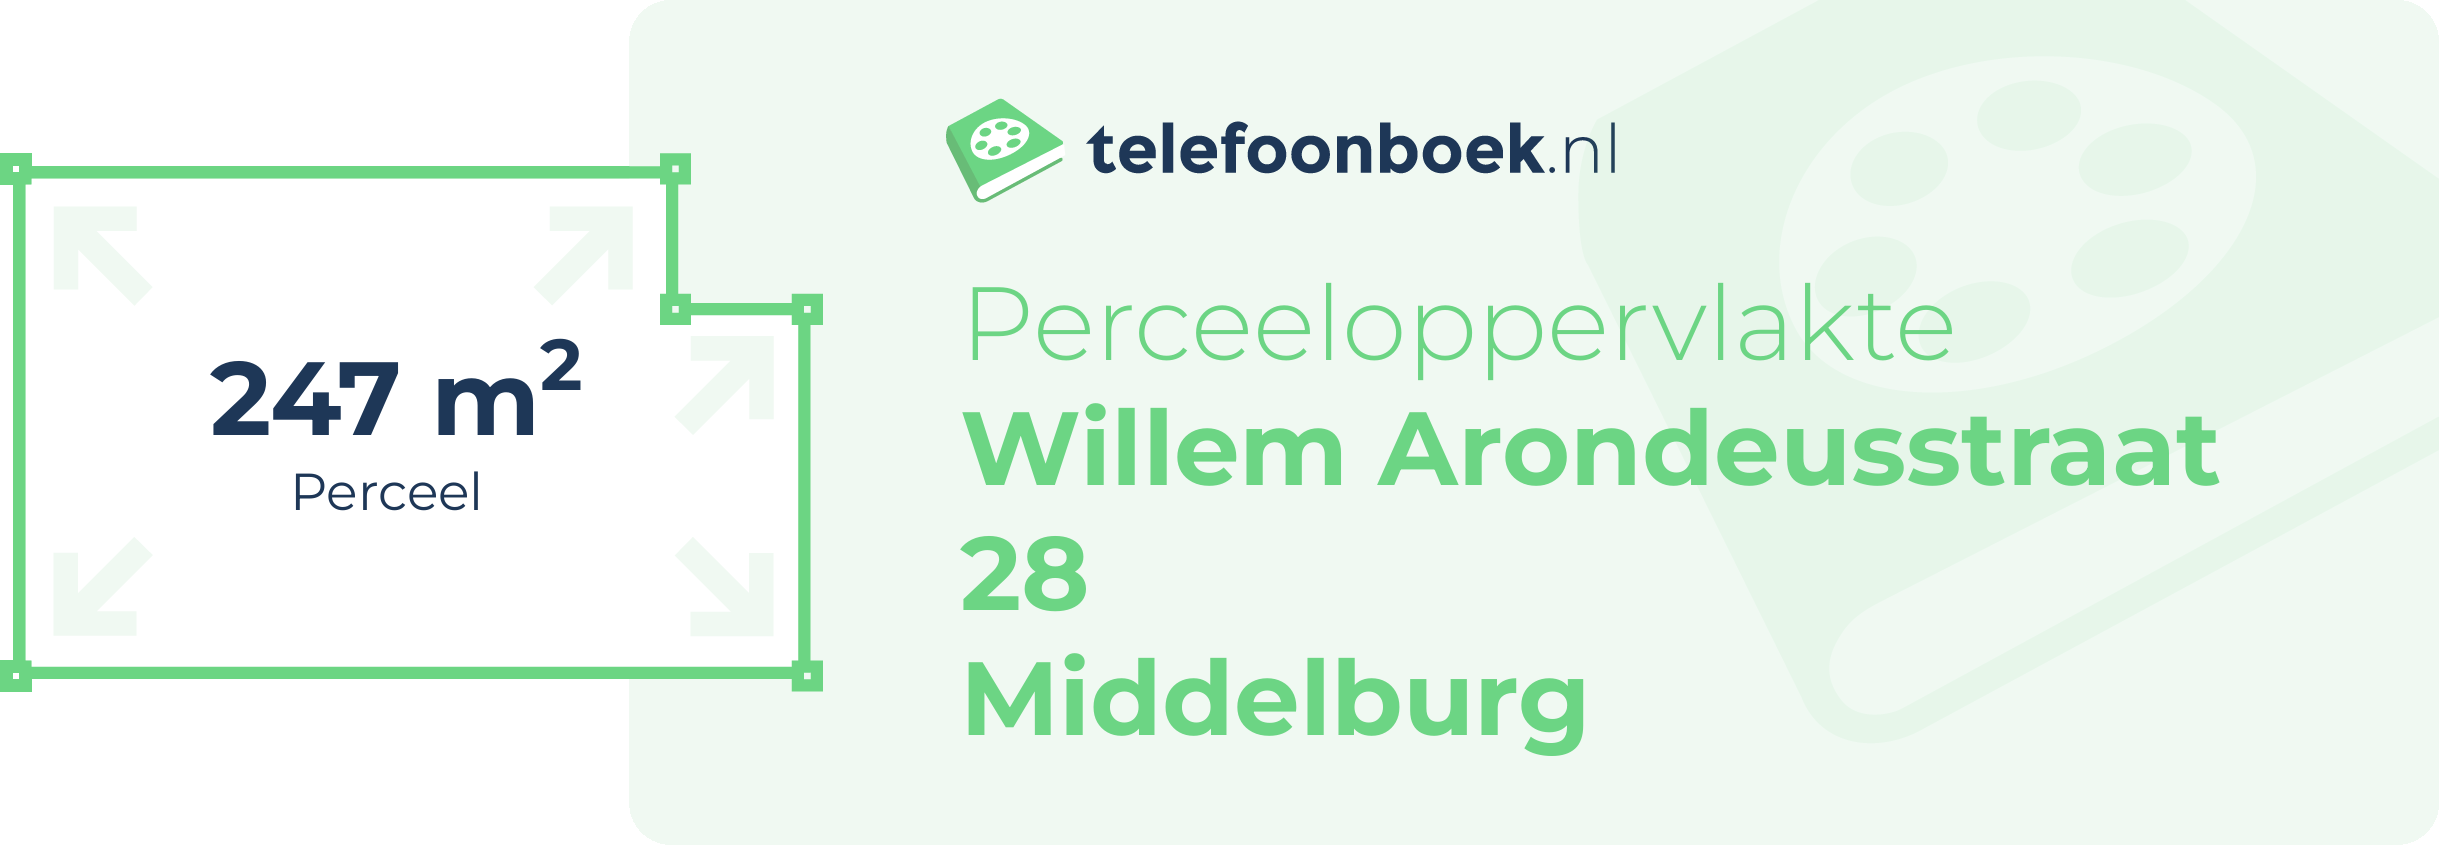 Perceeloppervlakte Willem Arondeusstraat 28 Middelburg